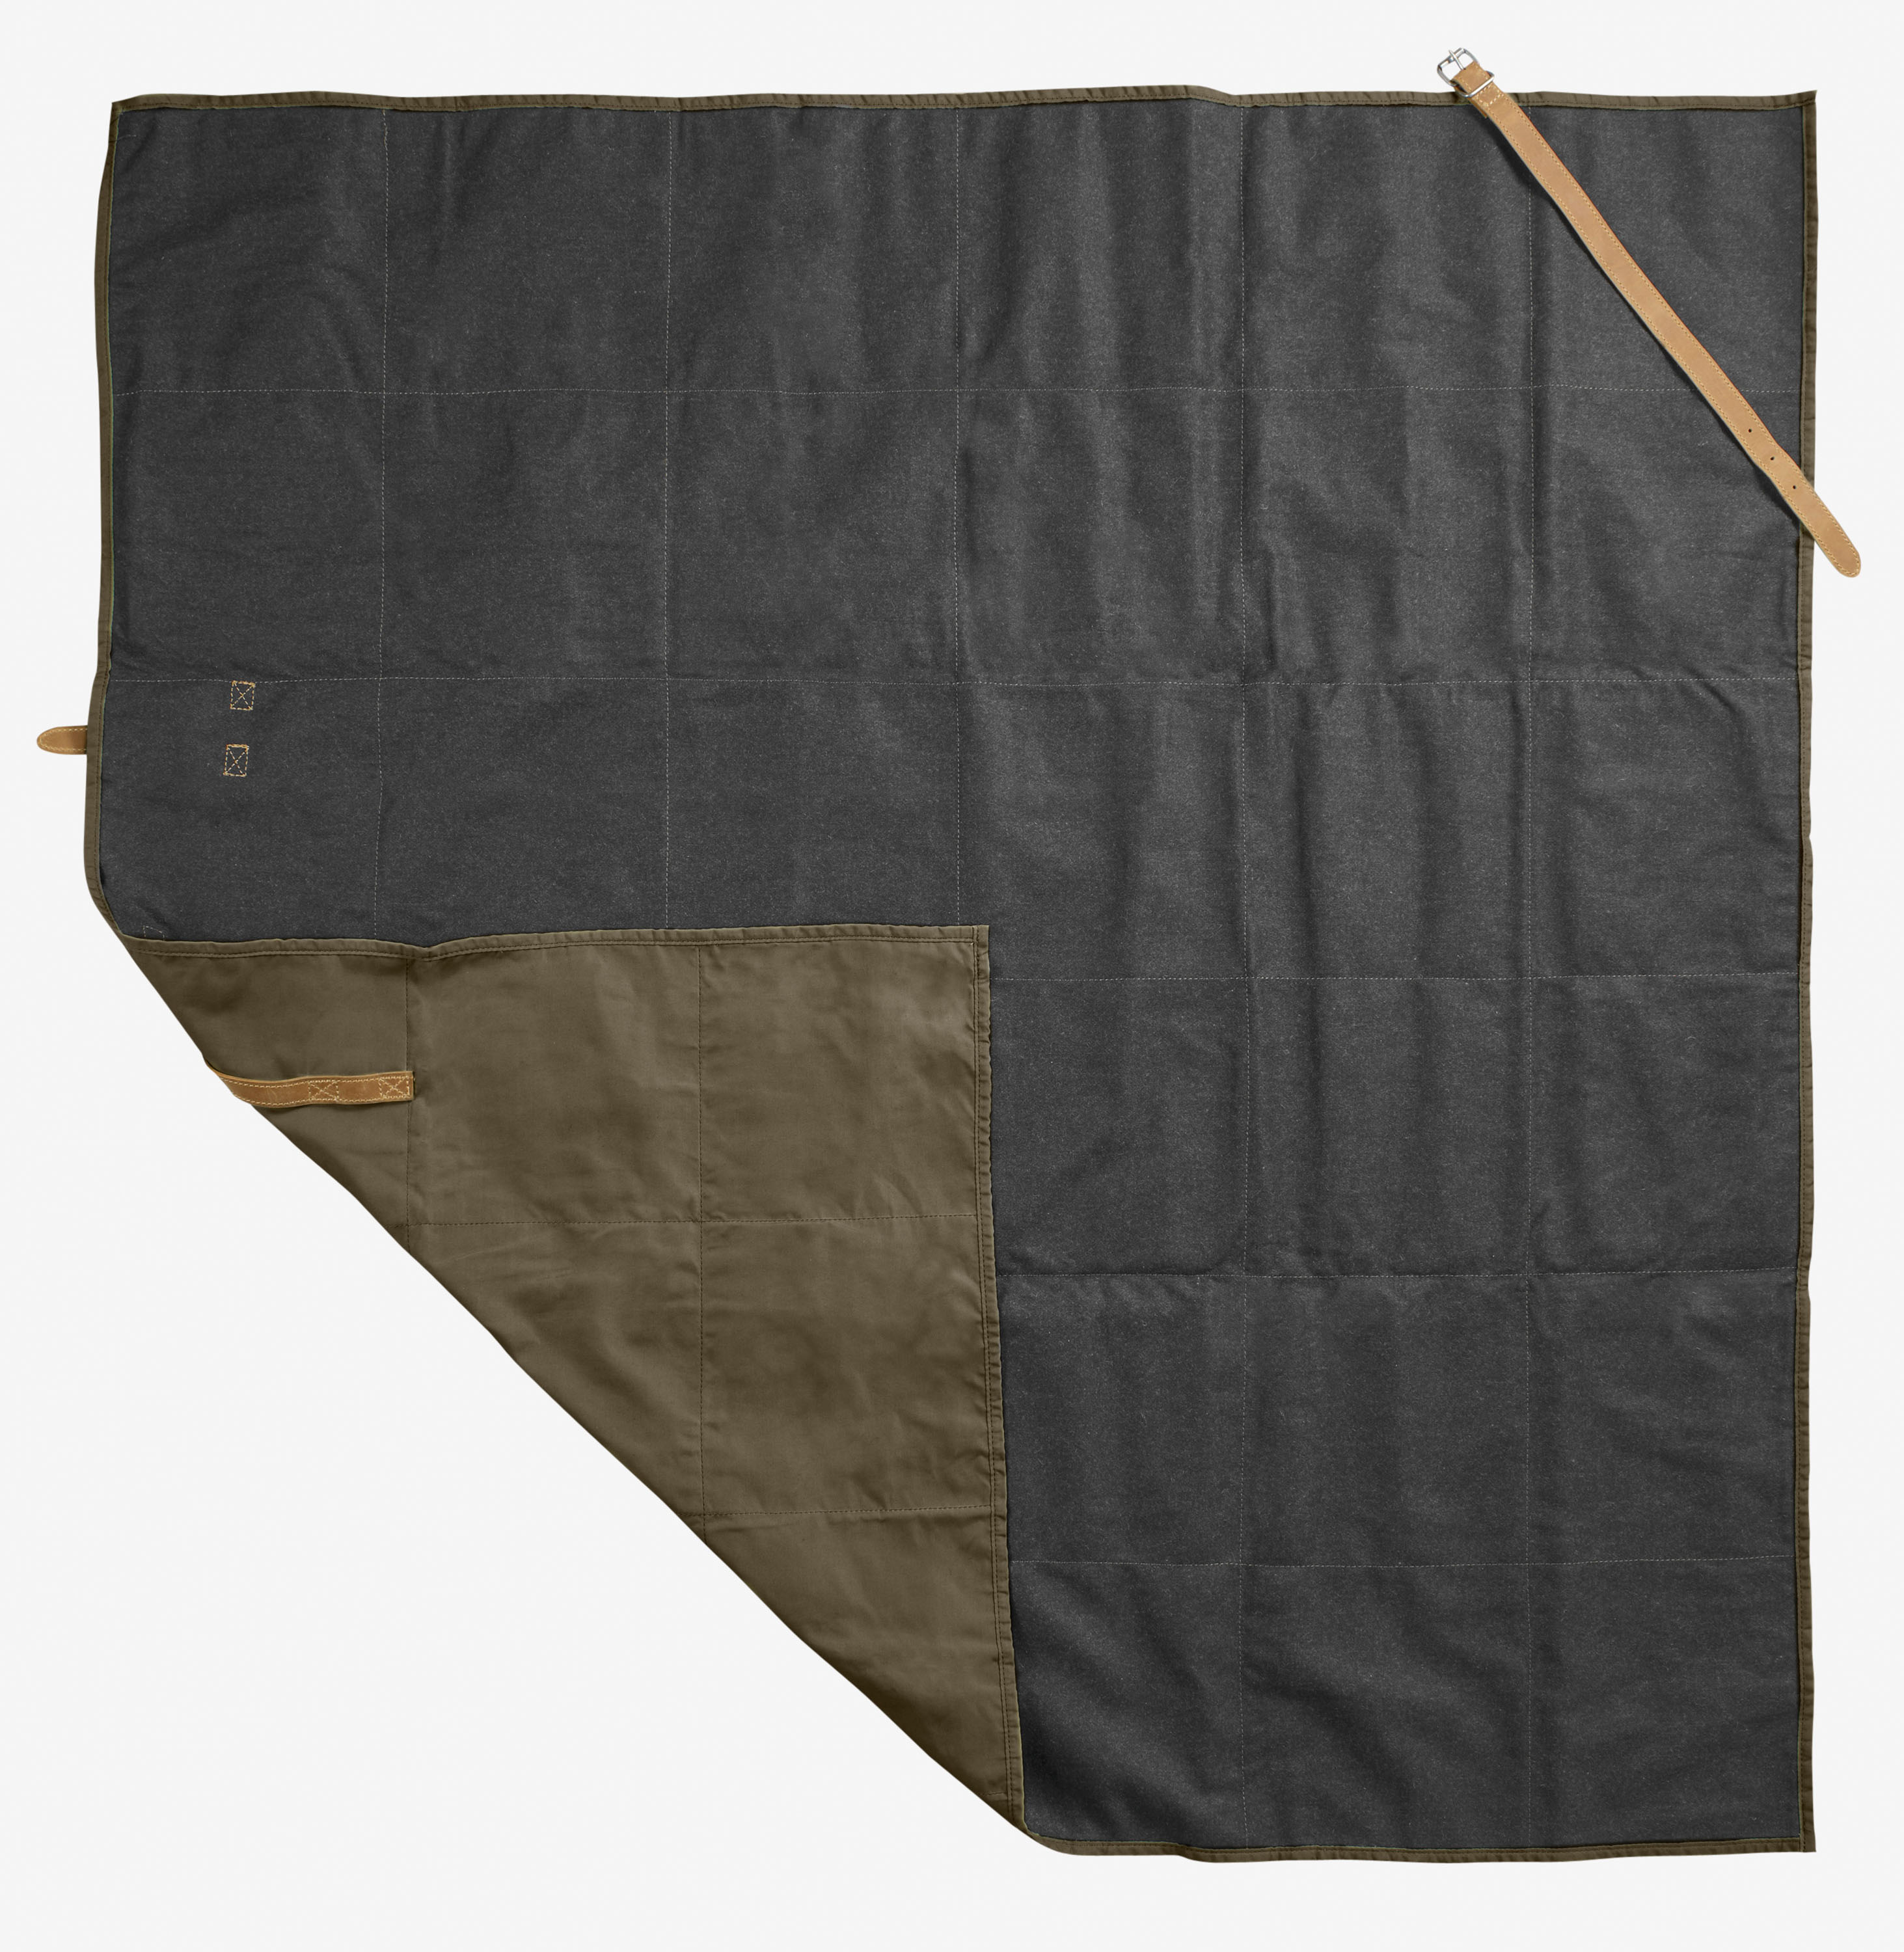 F JÄLLRÄVEN Matte Ovik Blanket – Als große Decke oder zum einrollen als Schlafsackersatz, am Lagerfeuer oder gefaltet als weiche Unterlage. Ausprobieren. € 199,95 © Fjällräven